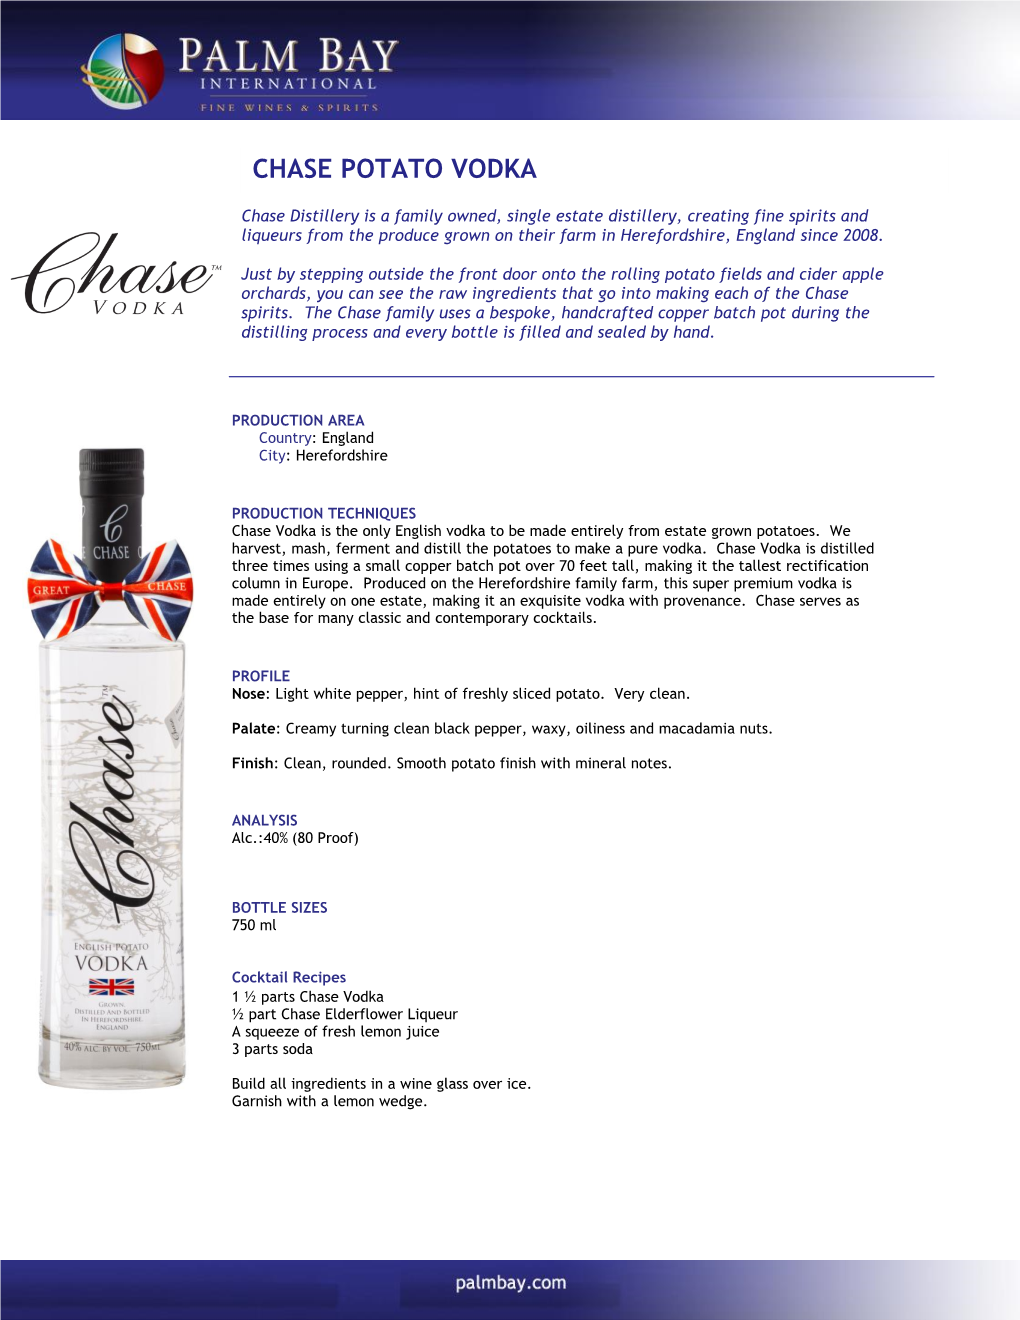 Chase Potato Vodka